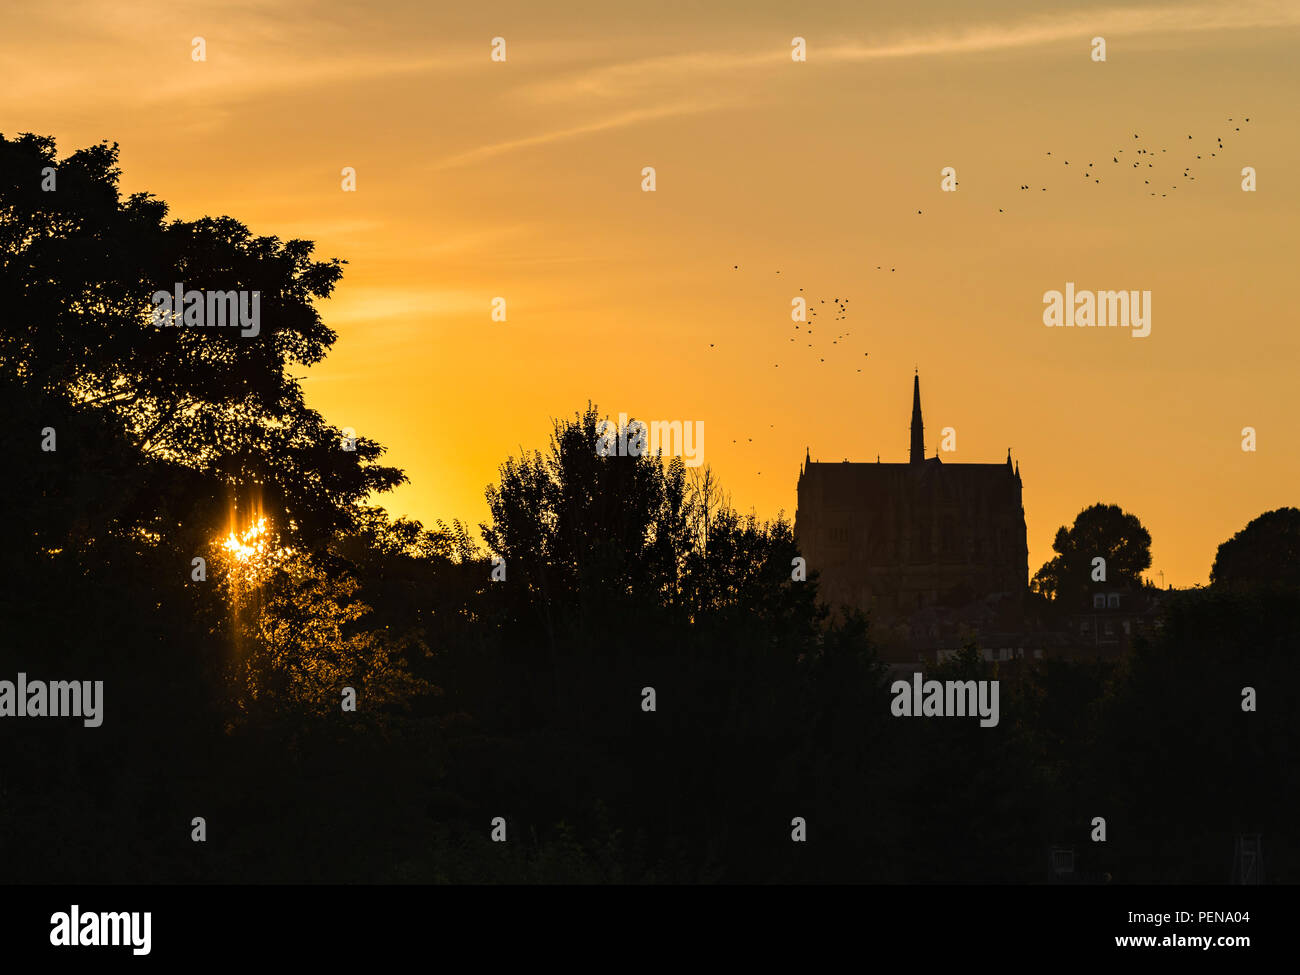 Blick auf den Sonnenuntergang durch die Bäume mit einer Kathedrale und Bäume in Arundel, West Sussex, England, UK sichtbar. Sonne orange sky. Stockfoto